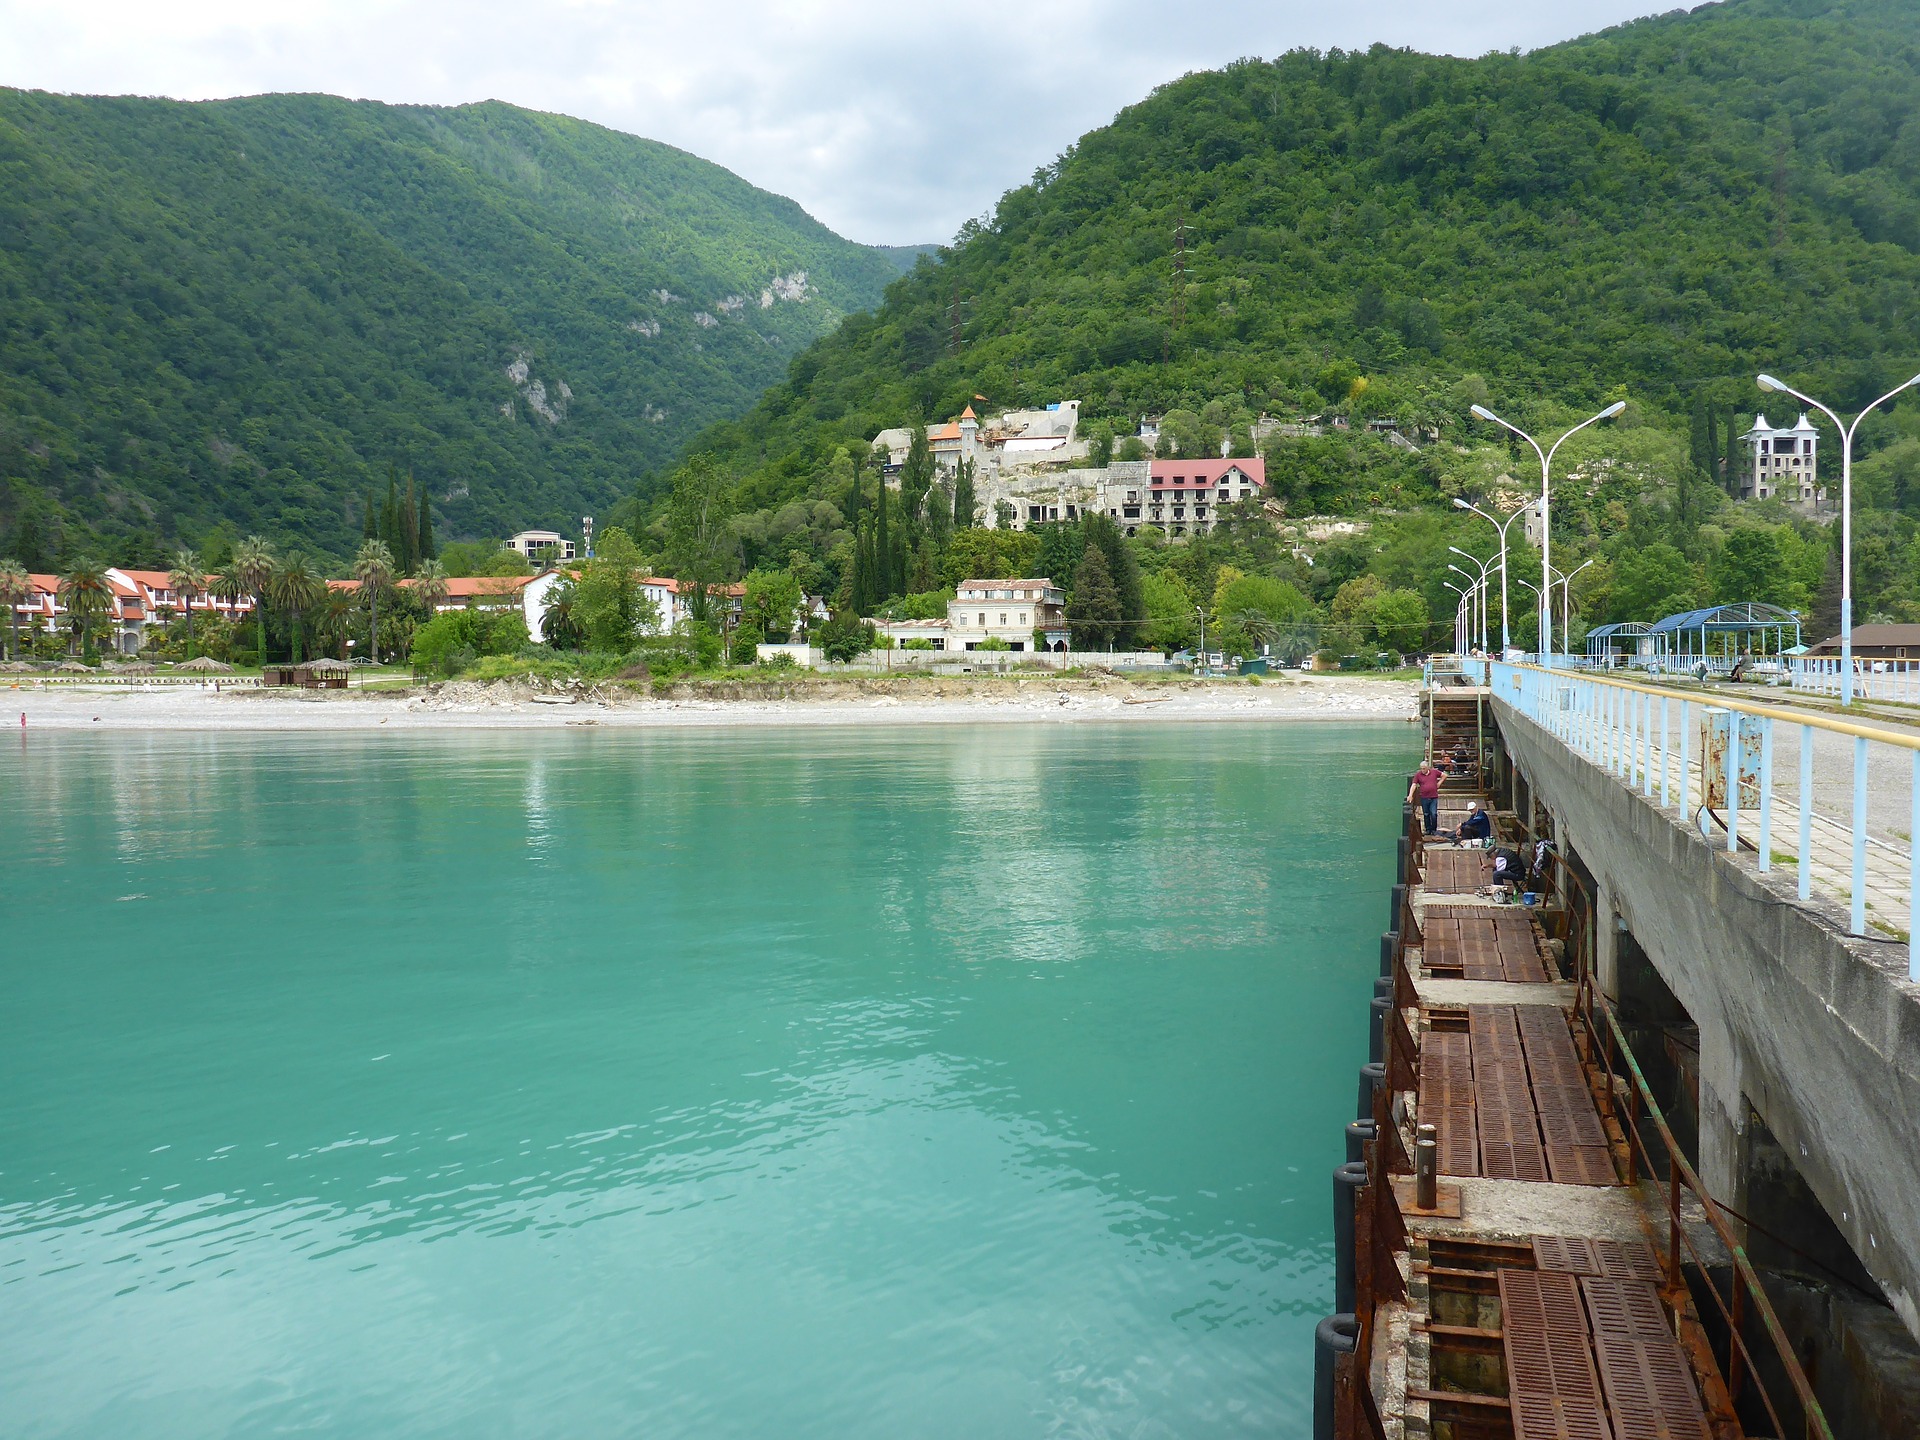 Мультимодальная перевозка в Абхазию на летний сезон стартует 30 апреля